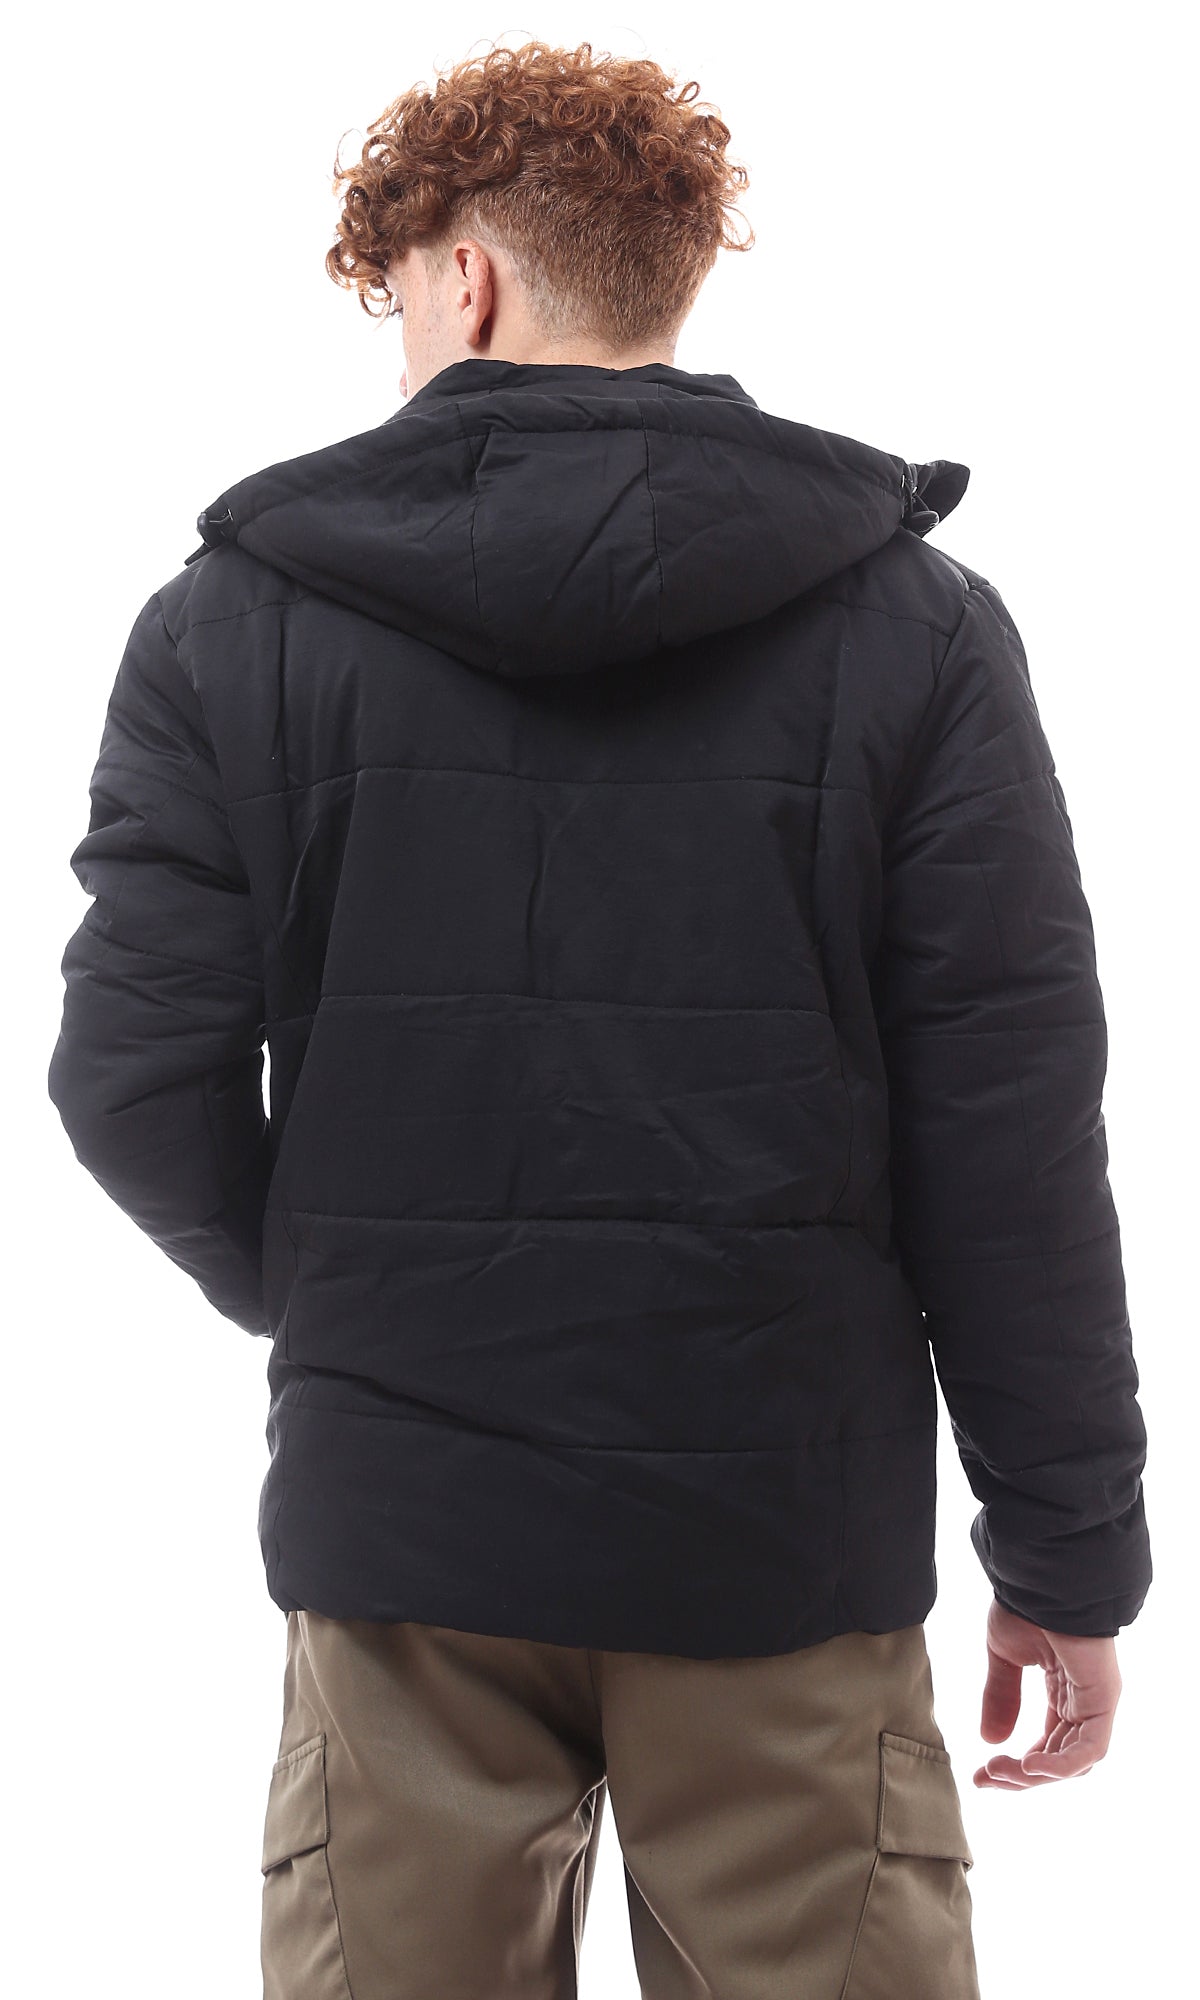 O156160 Adjustable Hooded Neck Black Solid Jacket